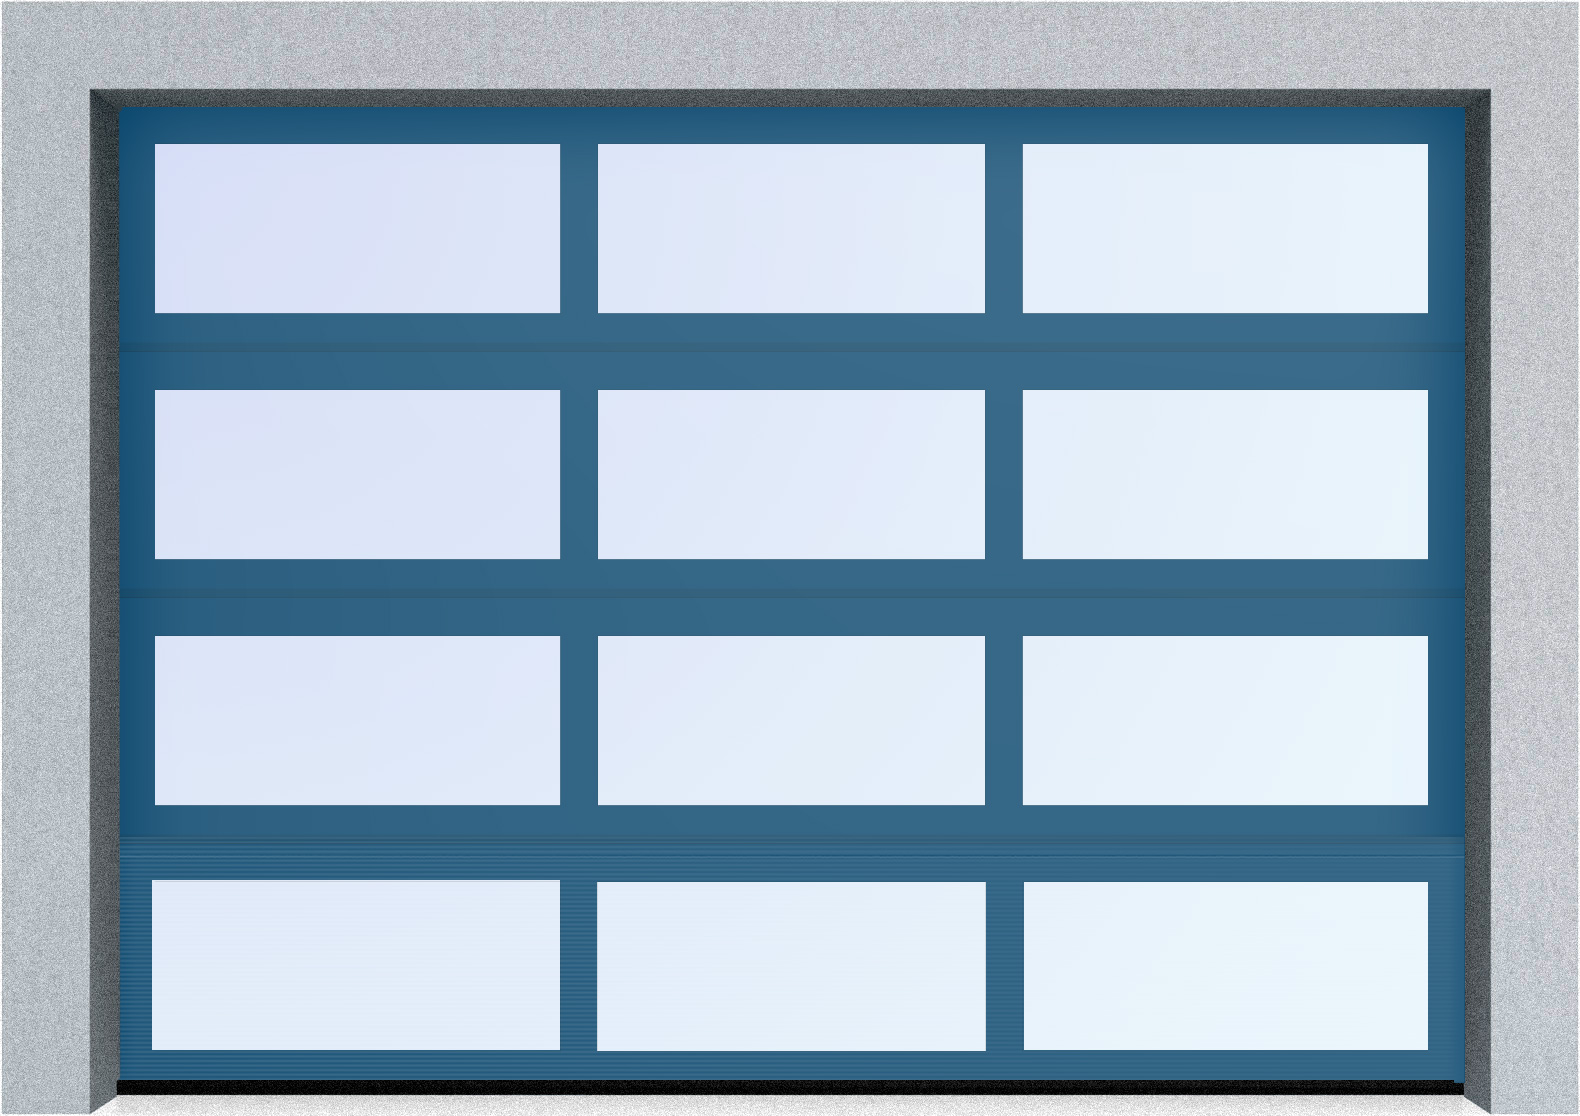  Секционные панорамные ворота серии AluTrend (АЛП) 6375х4500 нижняя панель стандартные цвета, фото 3 